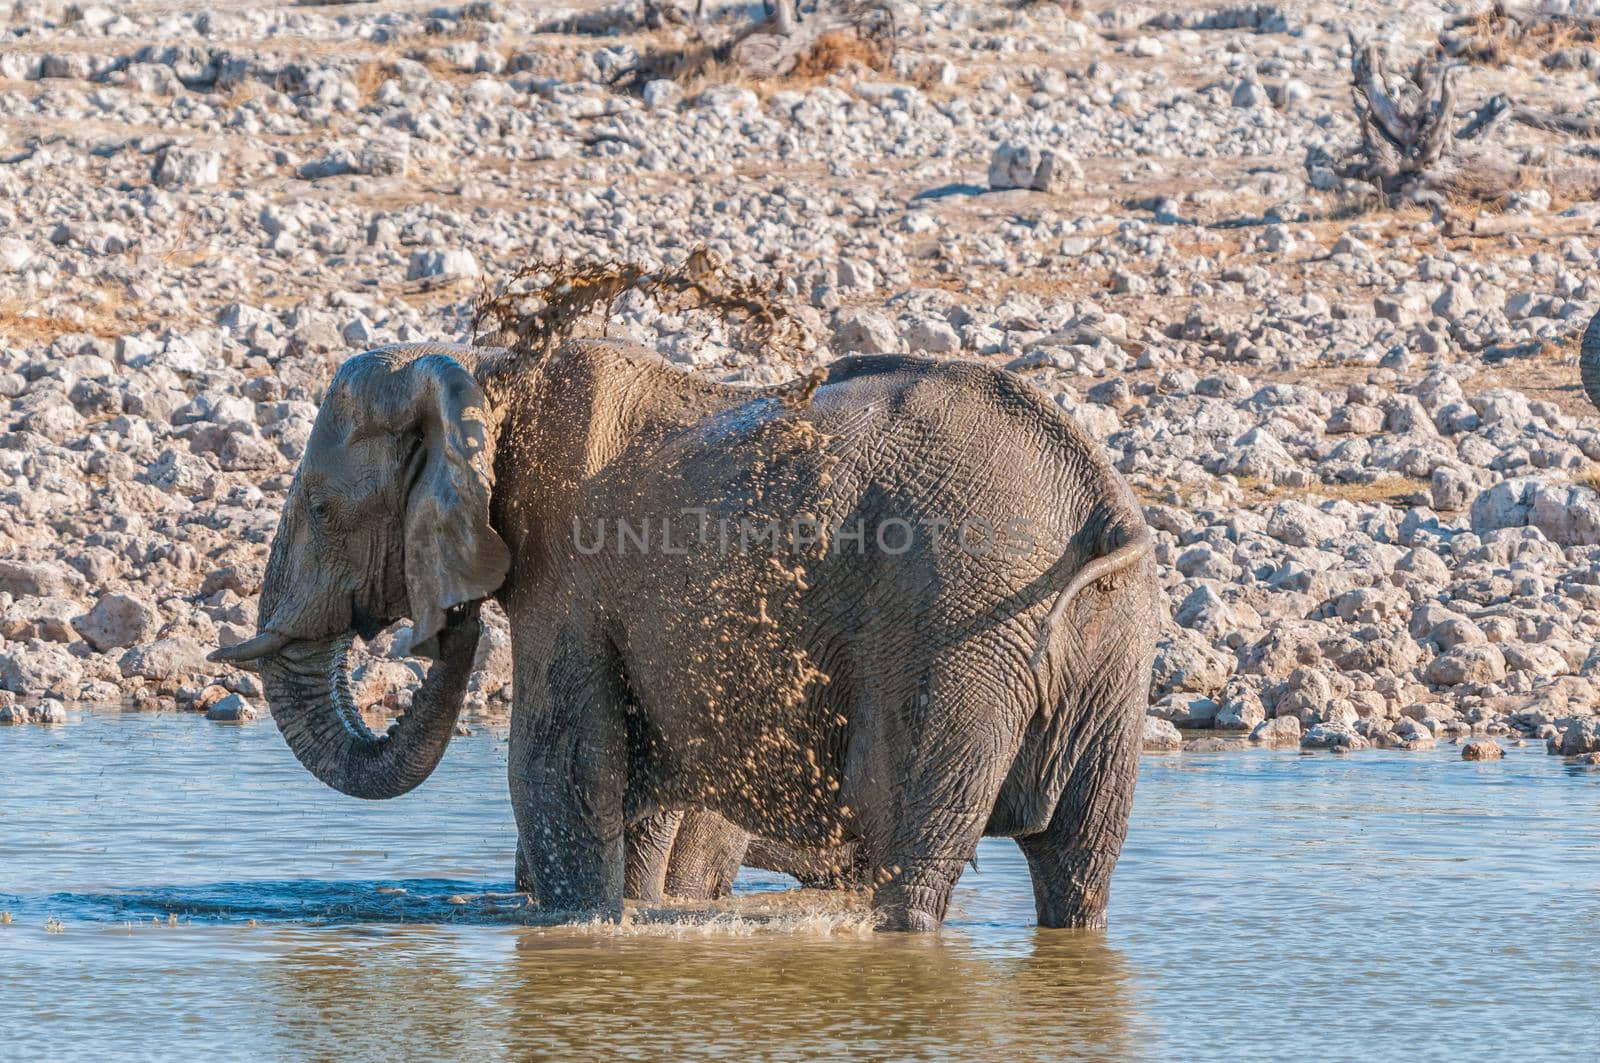 Elephant taking a mud bath in a waterhole by dpreezg